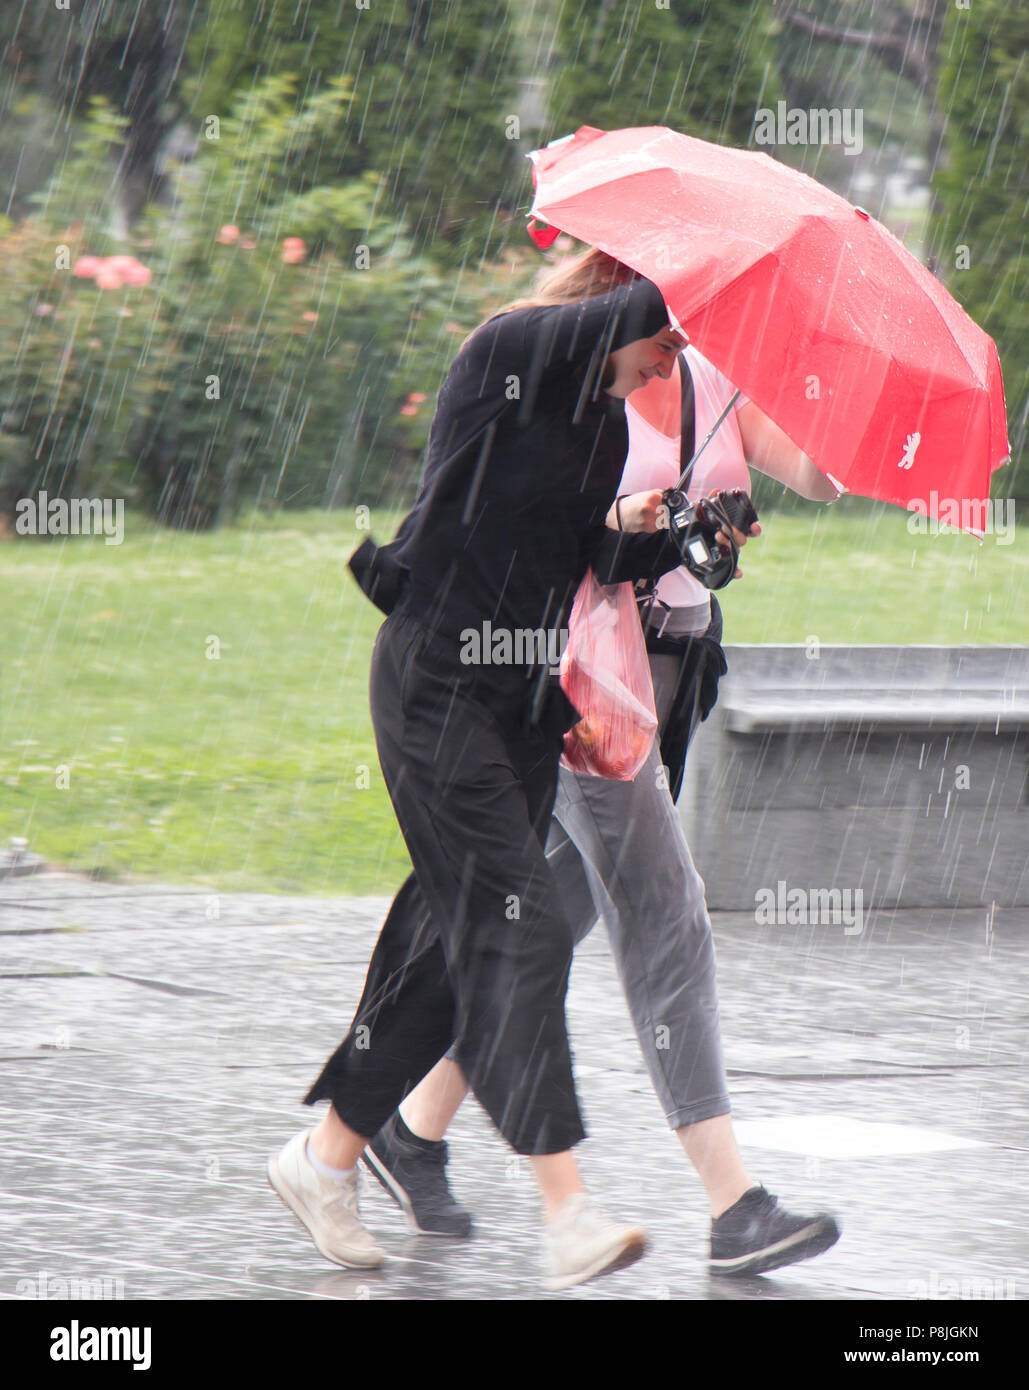 Belgrad, Serbien - Juni 14, 2018: Zwei junge Frauen unter roten Regenschirm in die plötzliche schwere Feder Regen in der Stadt Park läuft, Halten einer Kamera und Stockfoto